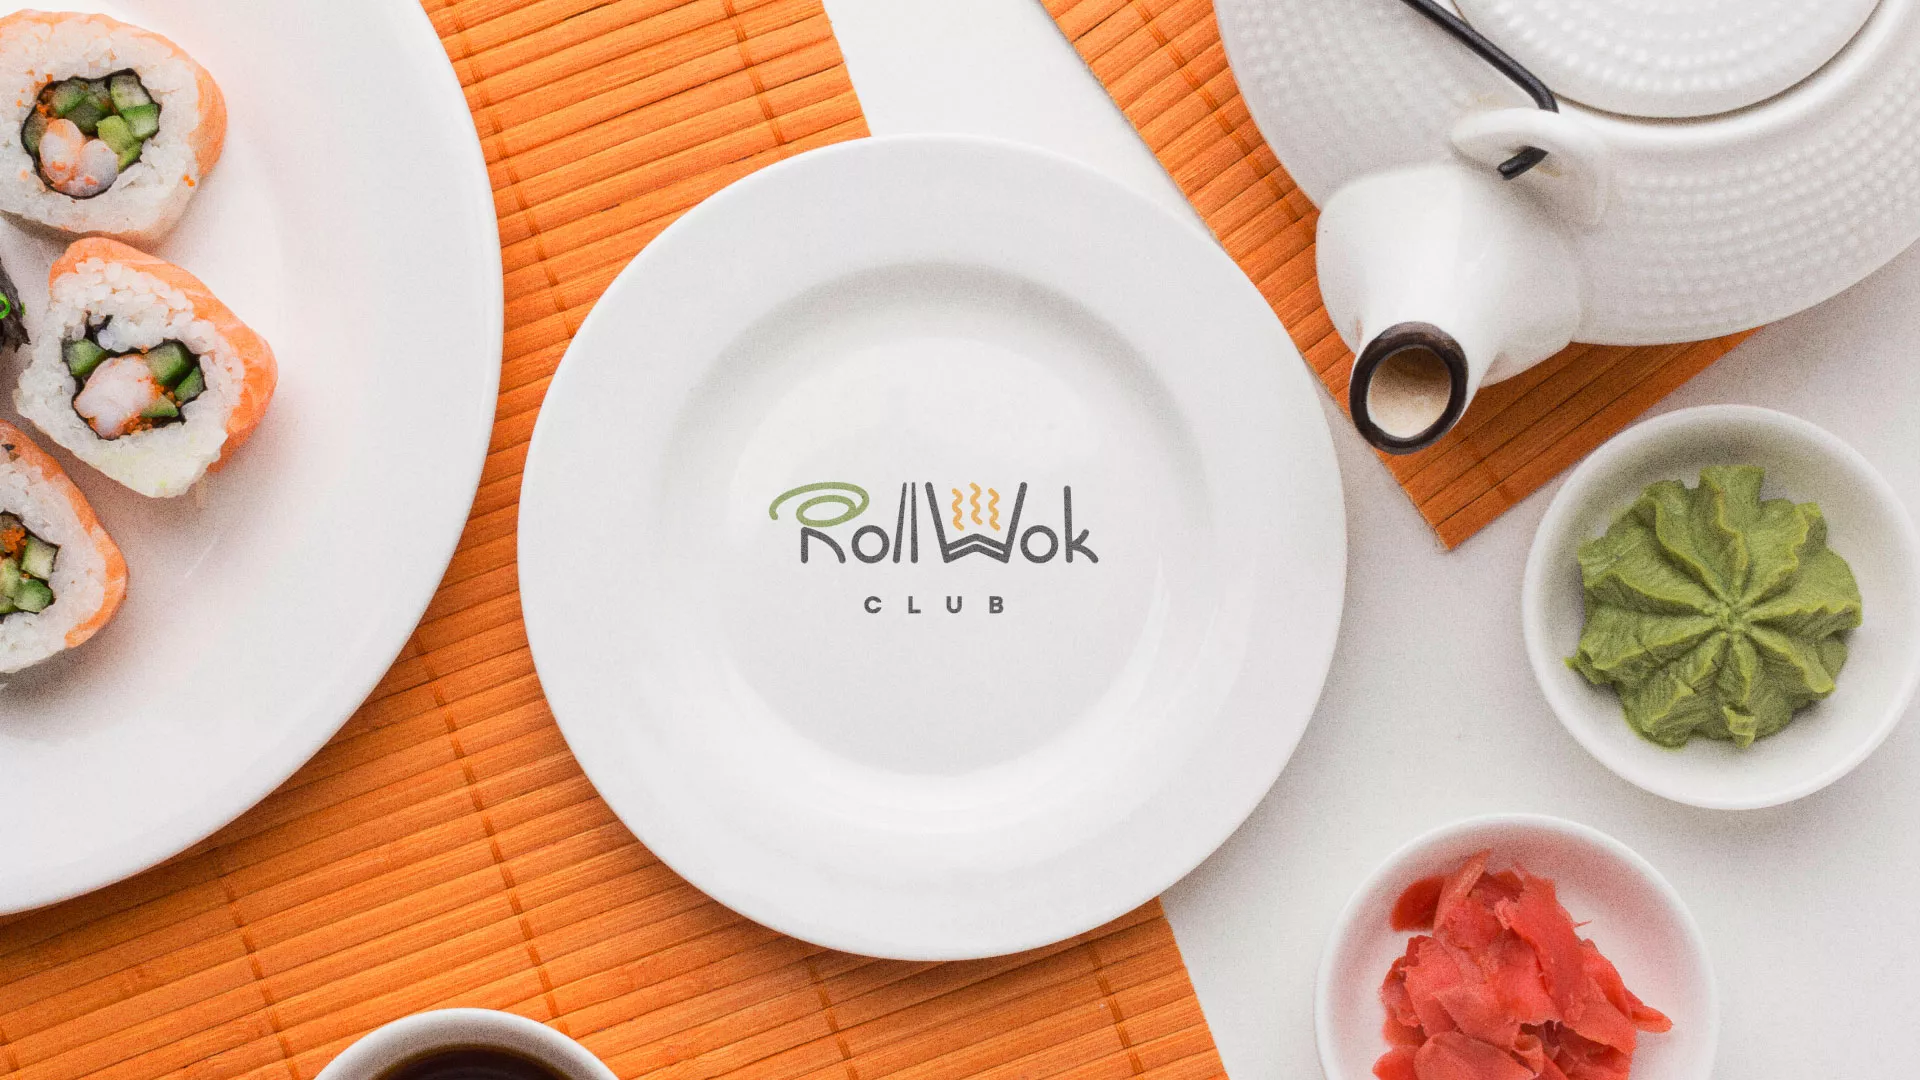 Разработка логотипа и фирменного стиля суши-бара «Roll Wok Club» в Владикавказе